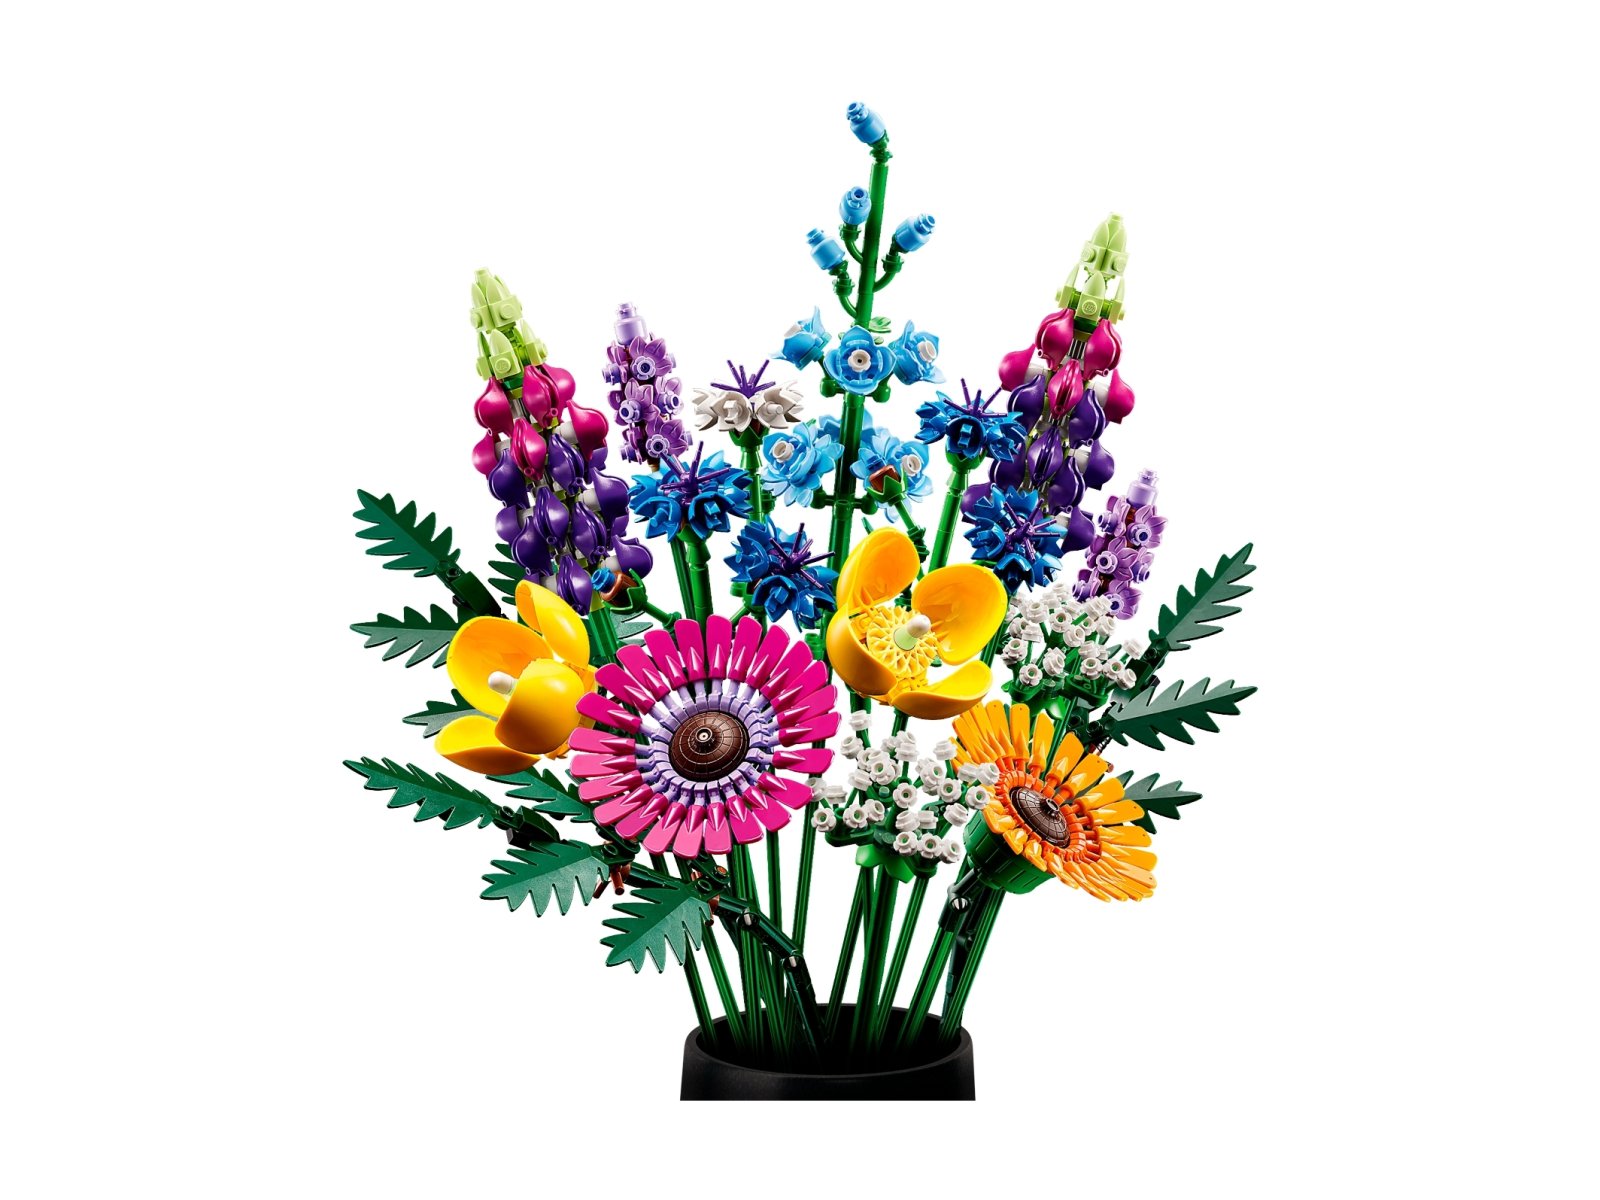 LEGO ICONS Bukiet z polnych kwiatów 10313